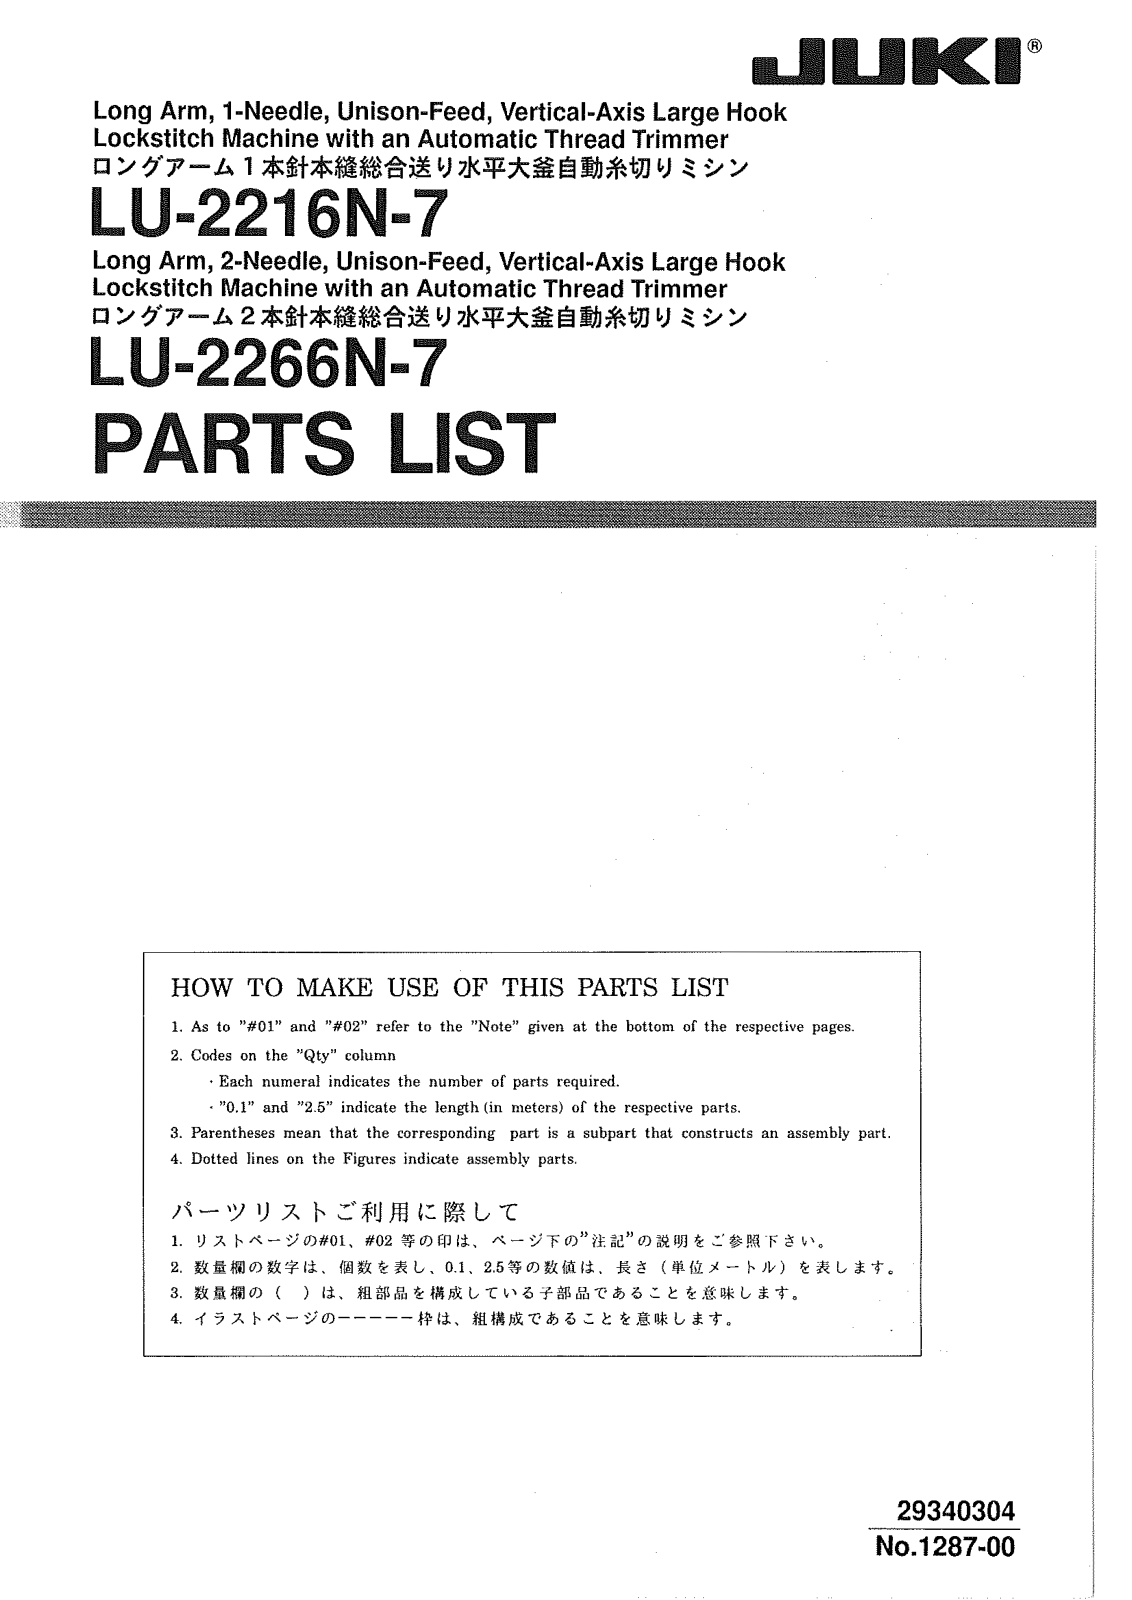 Juki LU-2216N-7, LU-2266N-7 Parts List